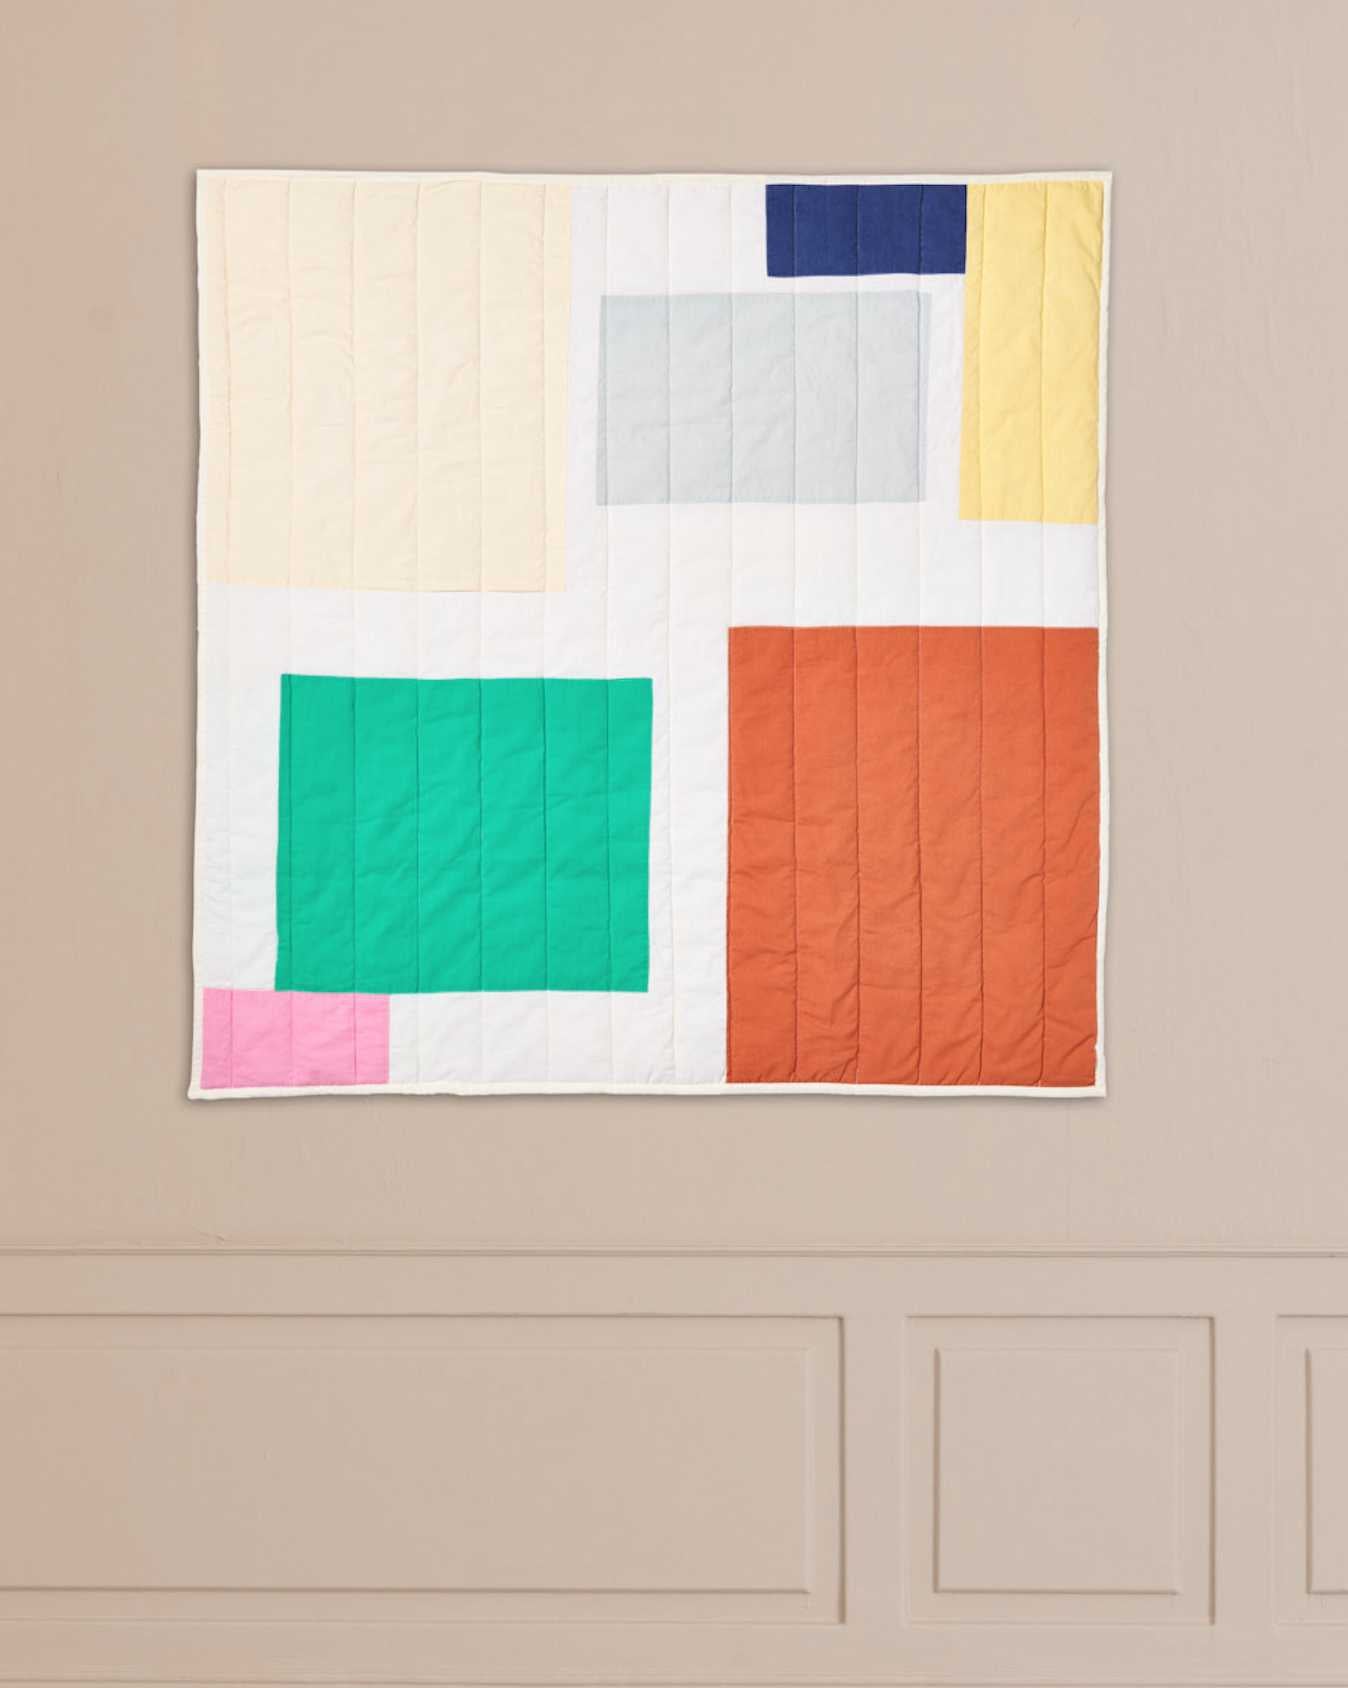 Jou Quilts PREETI quiltet vægtæppe | 110 x 110cm Jou Quilts